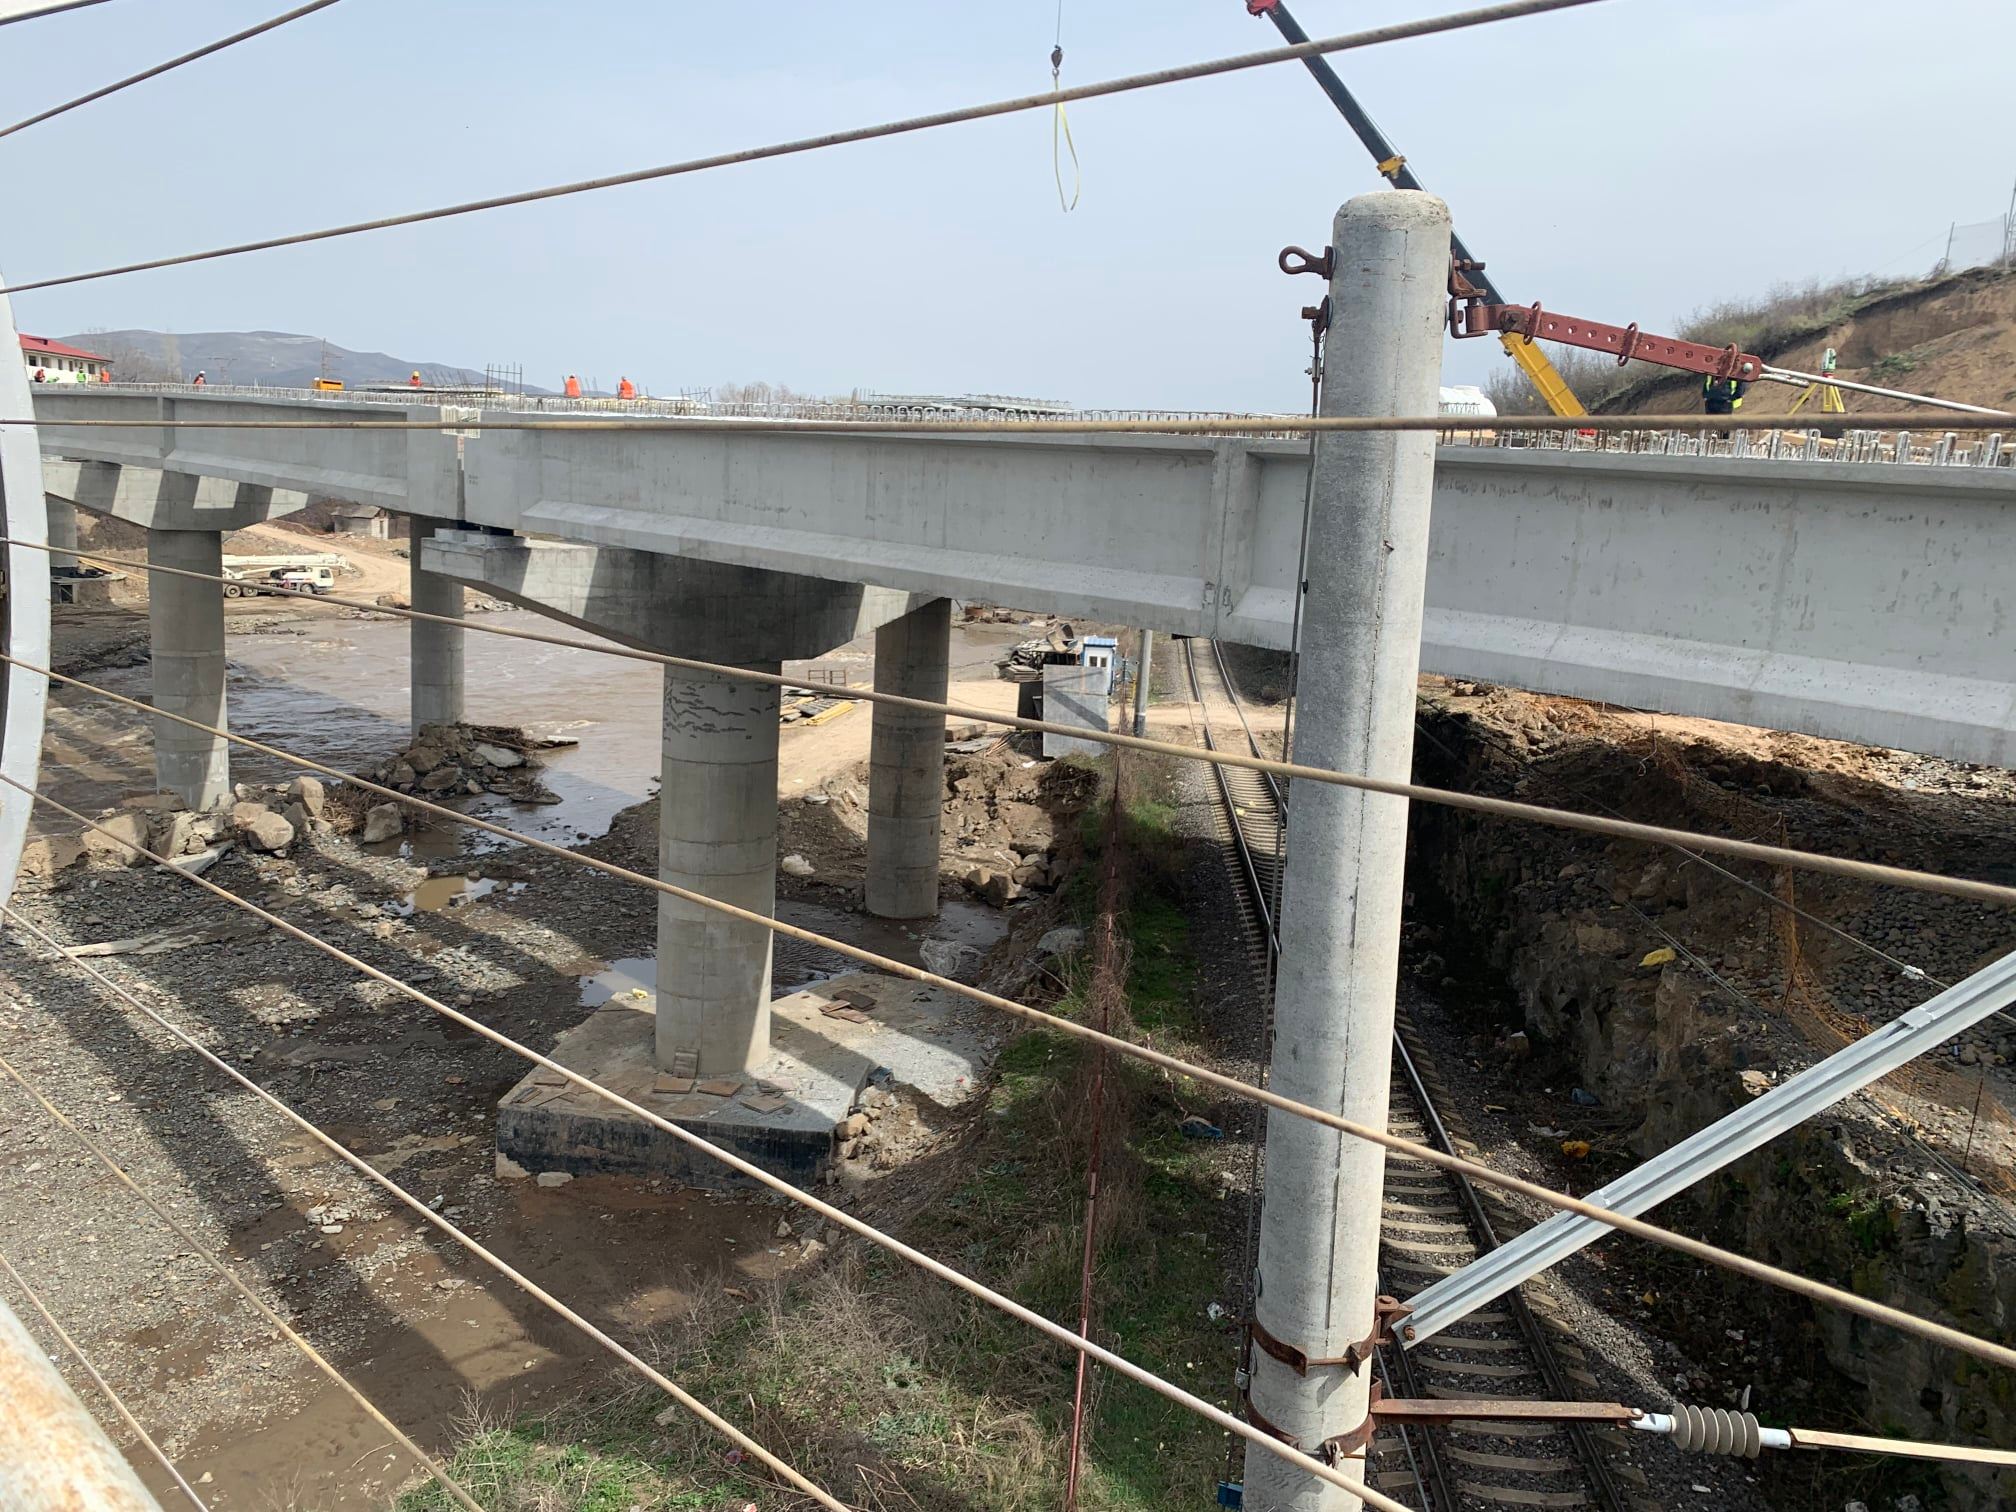 Հայկական և վրացական կողմերը հետևել են Բագրատաշենի սահմանային հսկողության անցակետում նոր կամրջի շինարարության ընթացքին